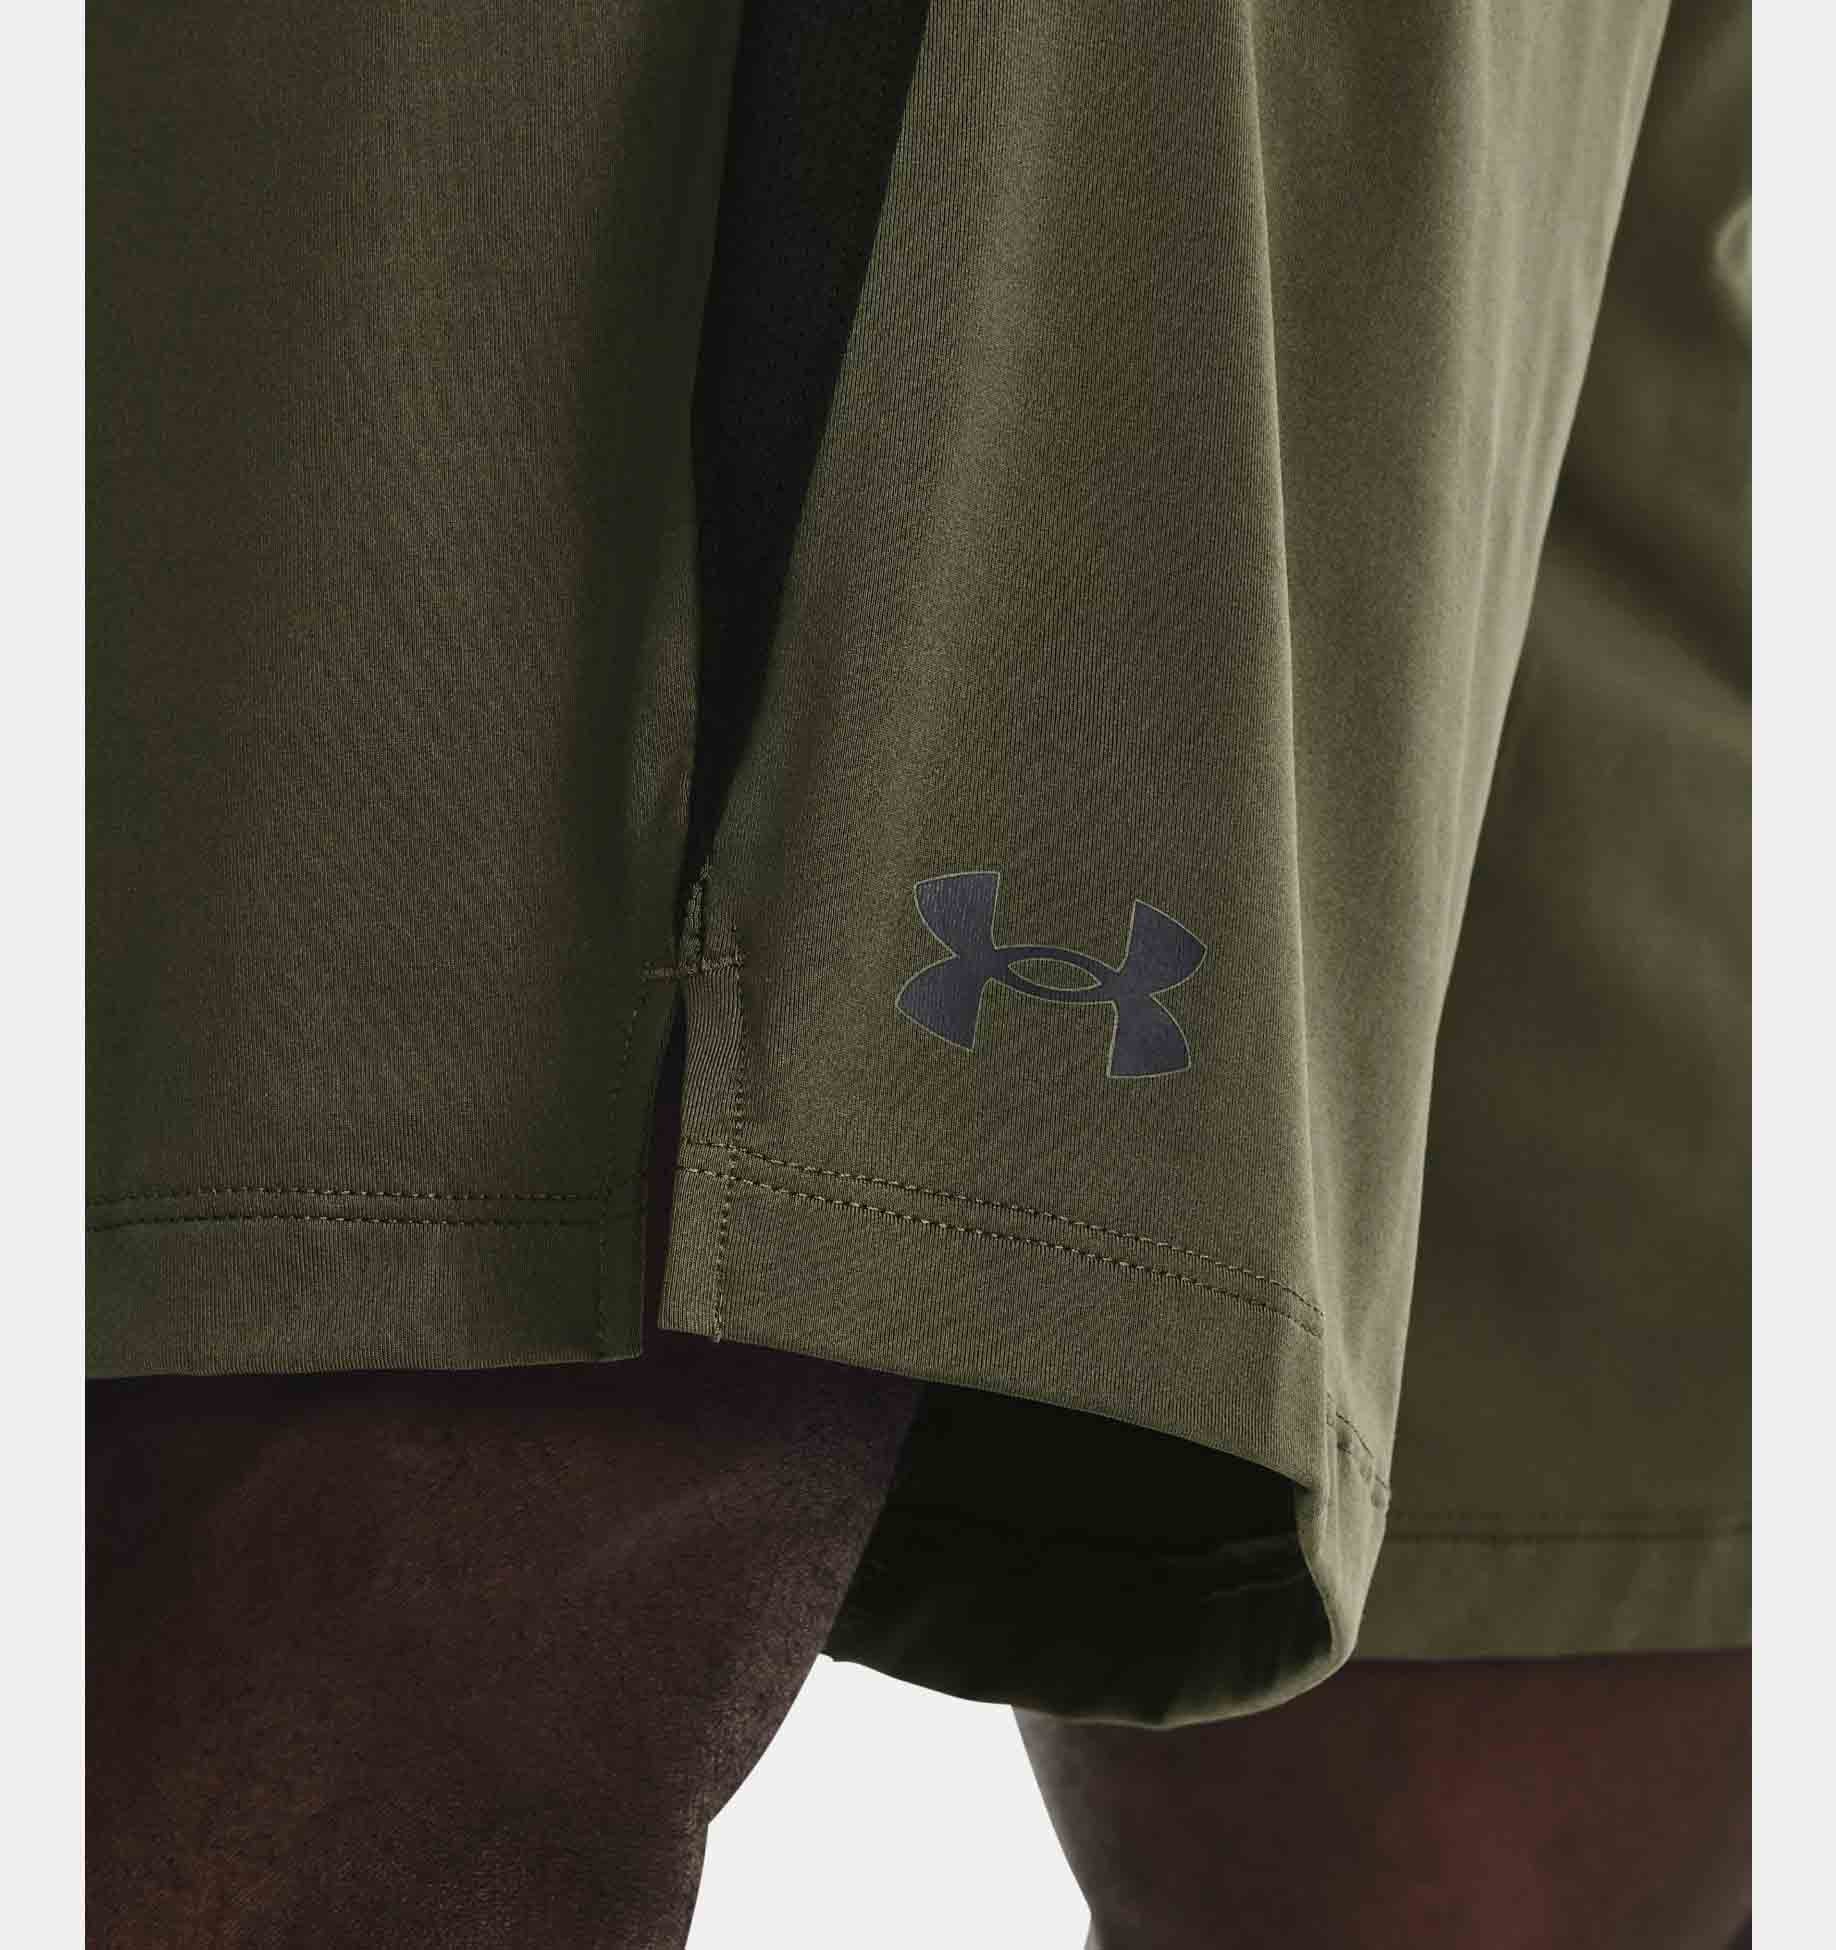 Pantalones cortos con ventilación UA Tech™